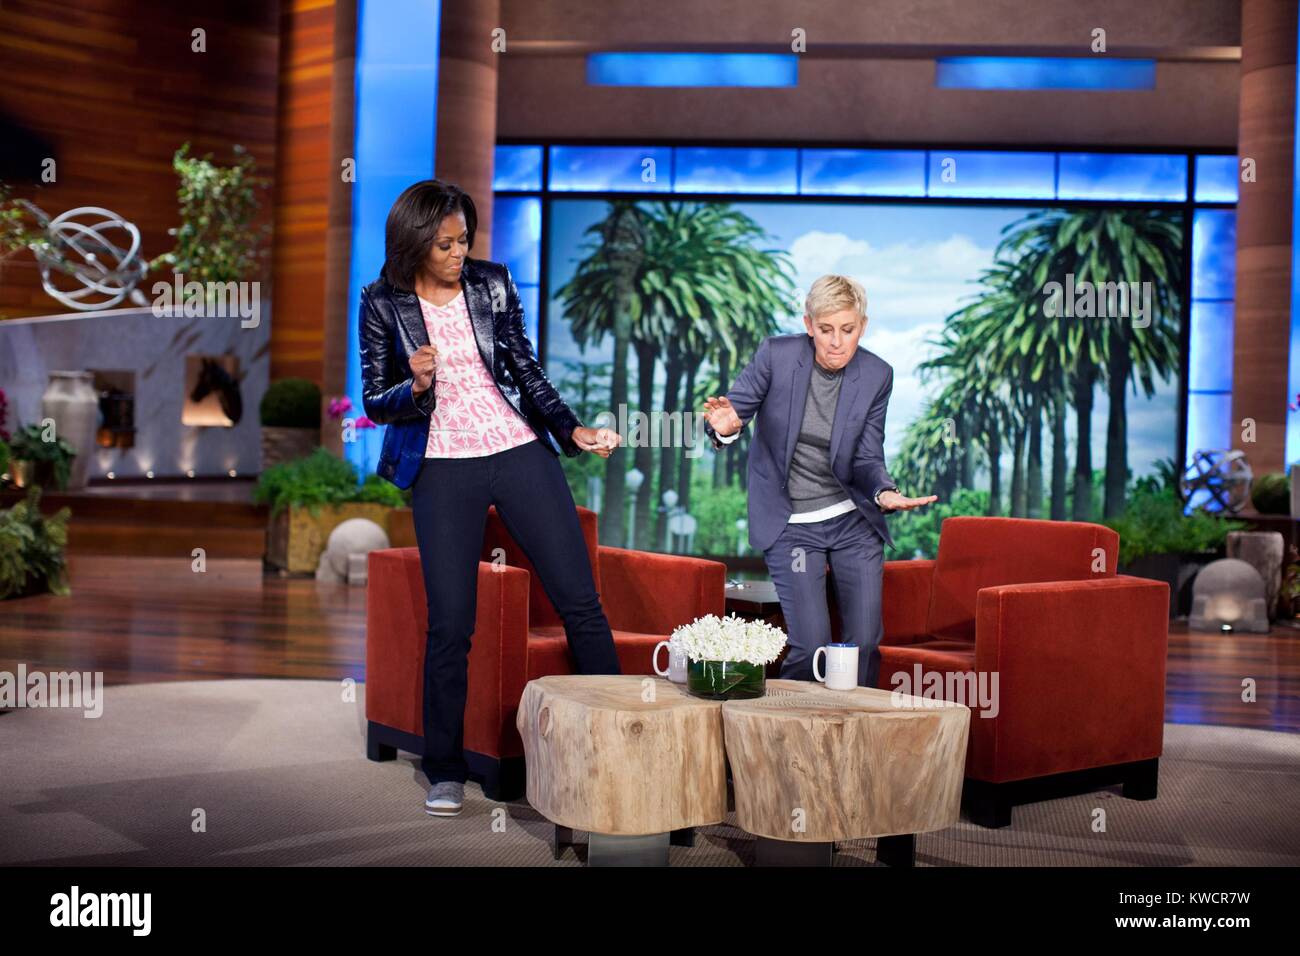 First Lady Michelle Obama und Ellen DeGeneres Tanz während einem Aufnehmen der "Ellen DeGeneres Show". Sie waren anlässlich des zweiten Jahrestages der Ersten Dame "Let's Move!" Initiative, in Burbank, Calif., Feb 1, 2012. (BSLOC 2015 3 115) Stockfoto